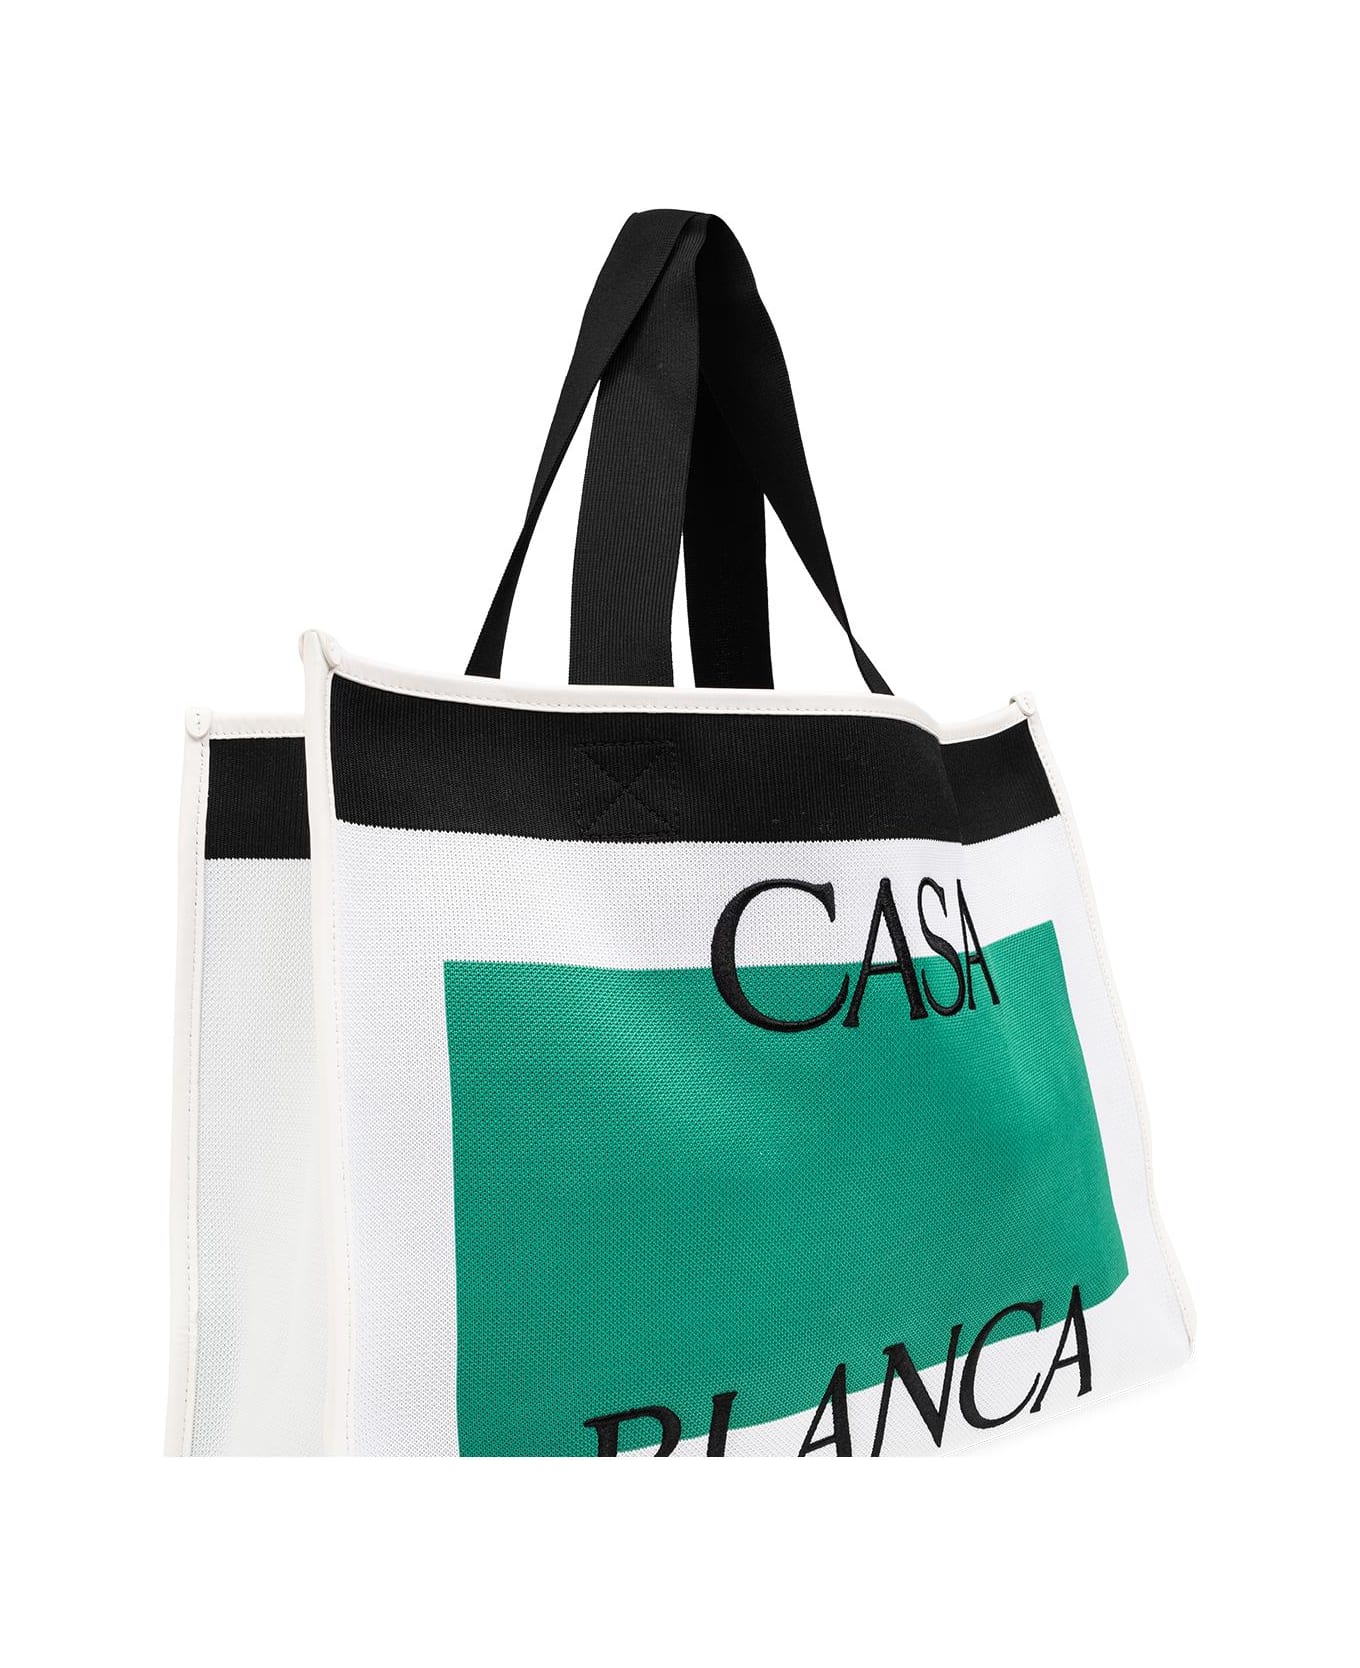 Casablanca Shopper Bag - WHITE/ GREEN